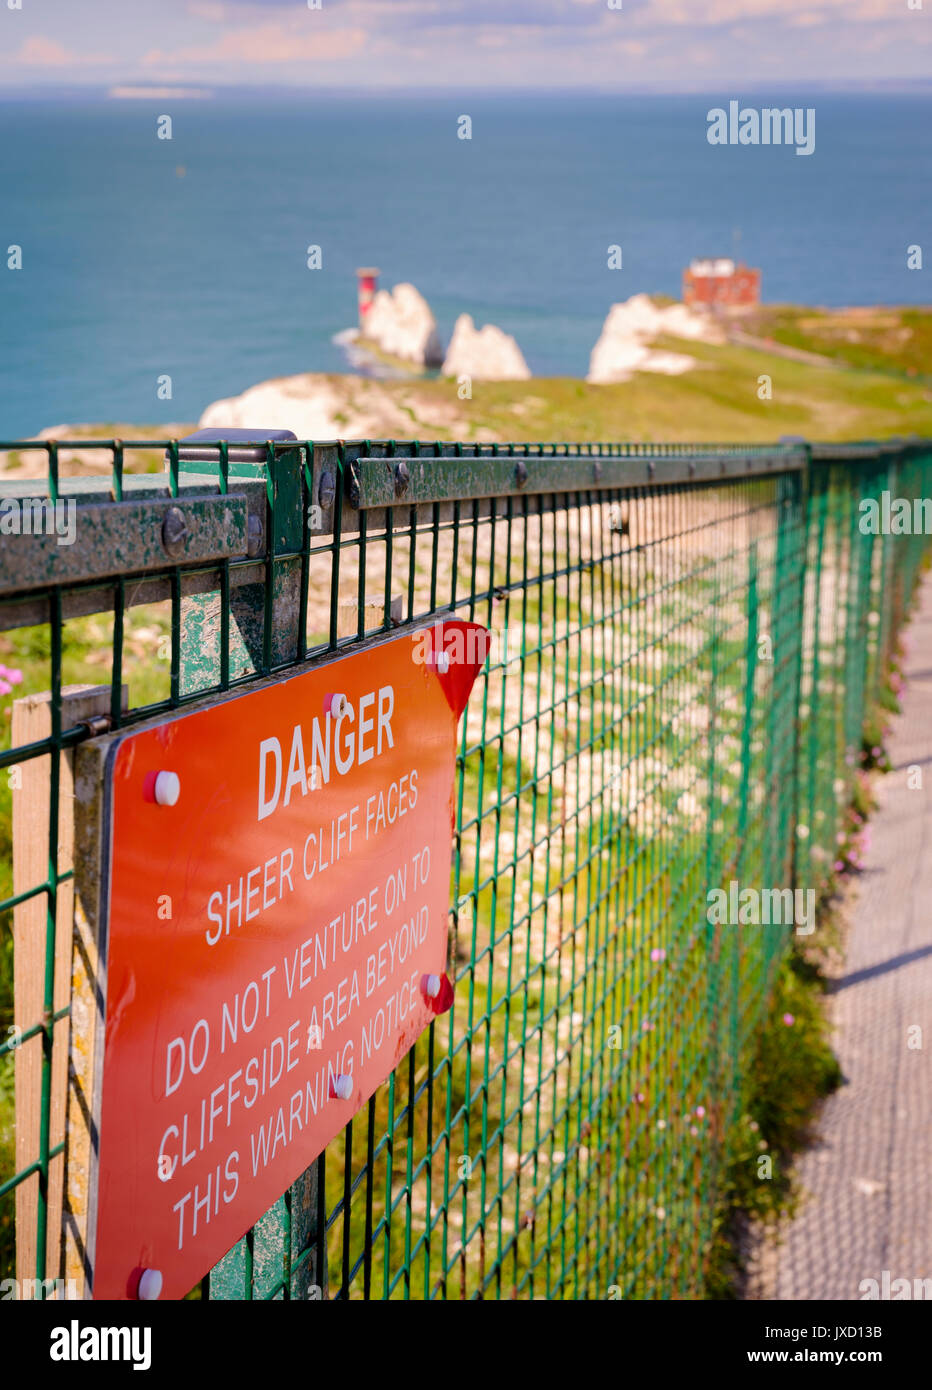 Gefahr schiere Felswände - Warnschild an einem Zaun an den Needles auf der Isle of Wight, Großbritannien. Stockfoto